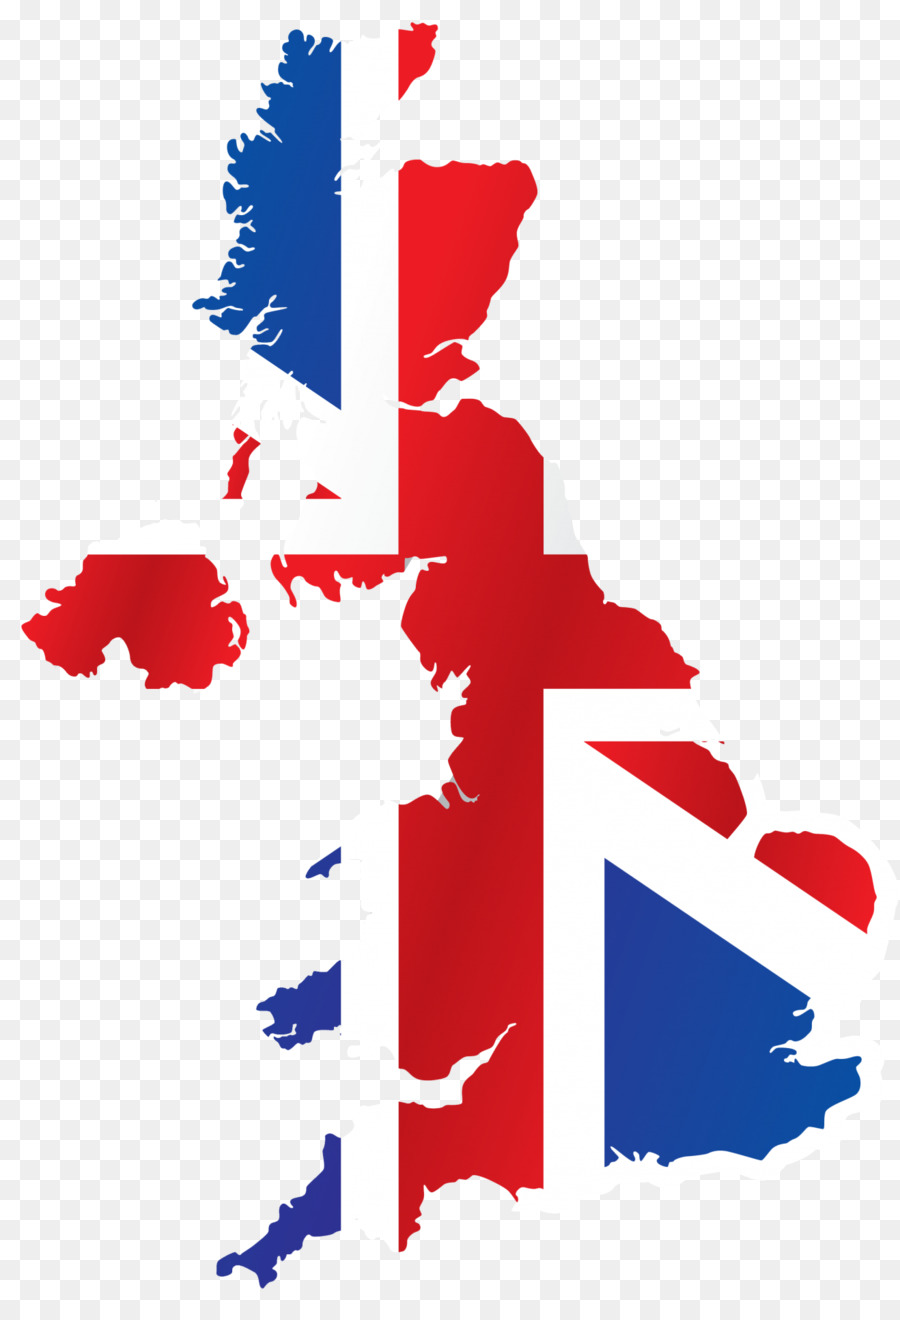 Bandiera della Gran Bretagna Bandiera del Regno Unito Mappa - mappa